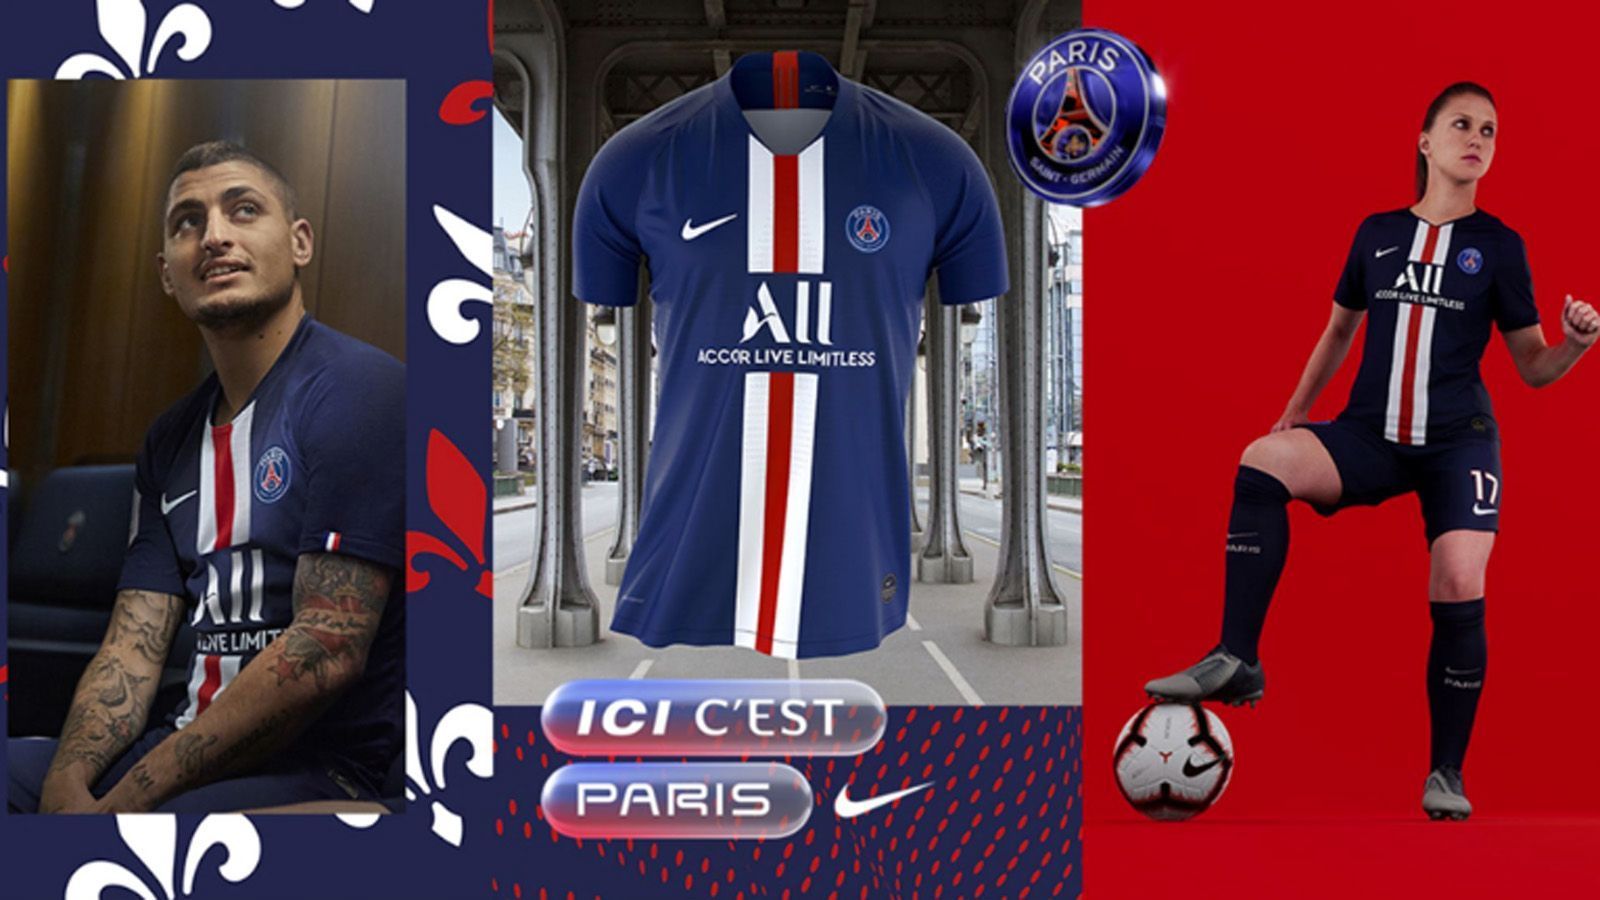 
                <strong>Paris Saint-Germain</strong><br>
                Erstmals in der Geschichte des Vereines wird dabei der gleiche Sponsor auf allen Trikots jeder Abteilung aufgedruckt sein. Dabei wird vor allem auf die Grundfarben PSGs, blau und rot, großer Wert gelegt. In wenigen Monaten feiert der französische Meister 50-Jähriges Bestehen. Das Trikot soll die Wurzeln und stetige Neuerungen von PSG vereinen. 
              